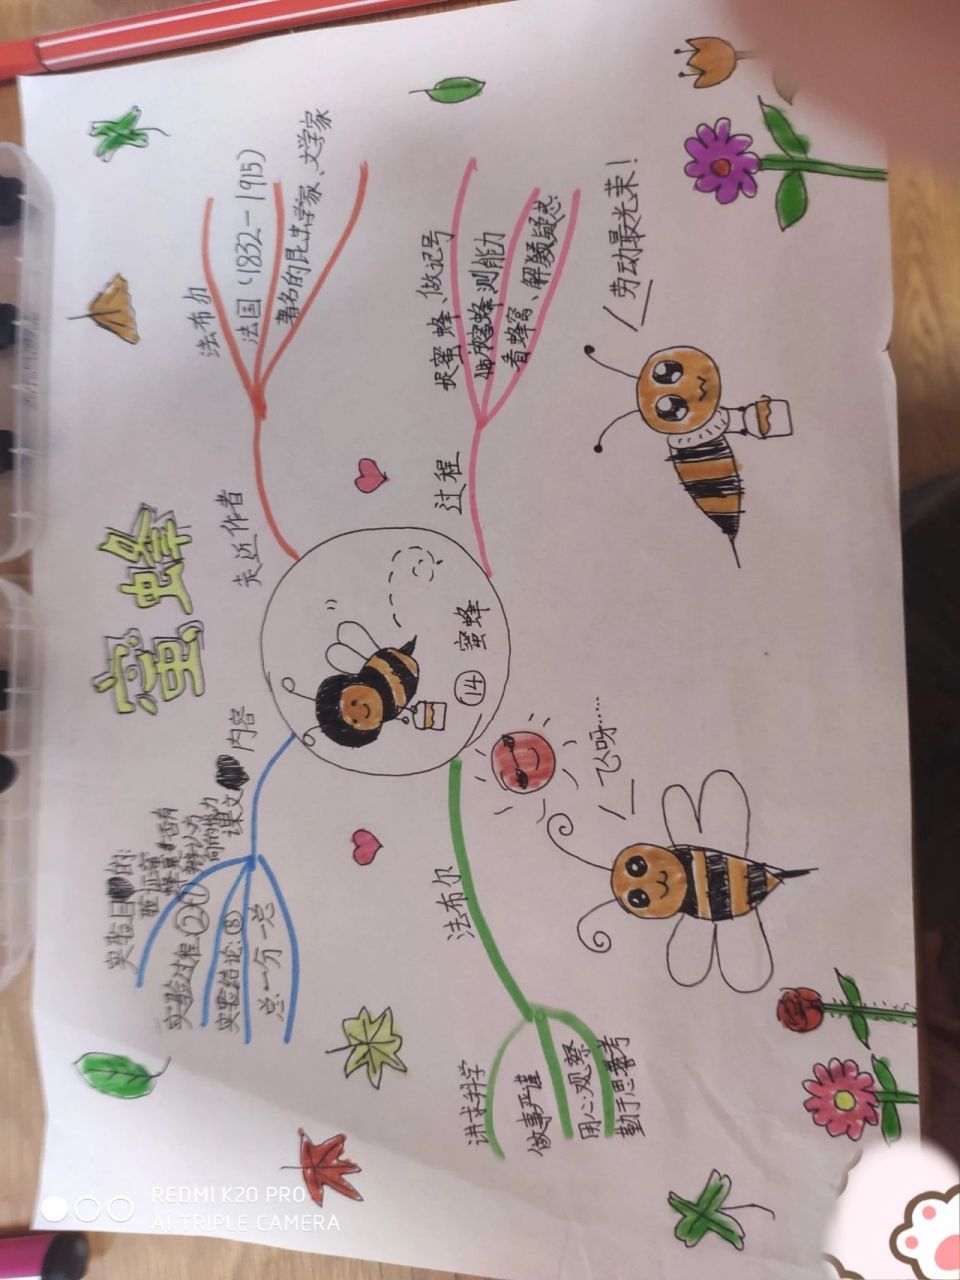 三年级蜜蜂动作图片